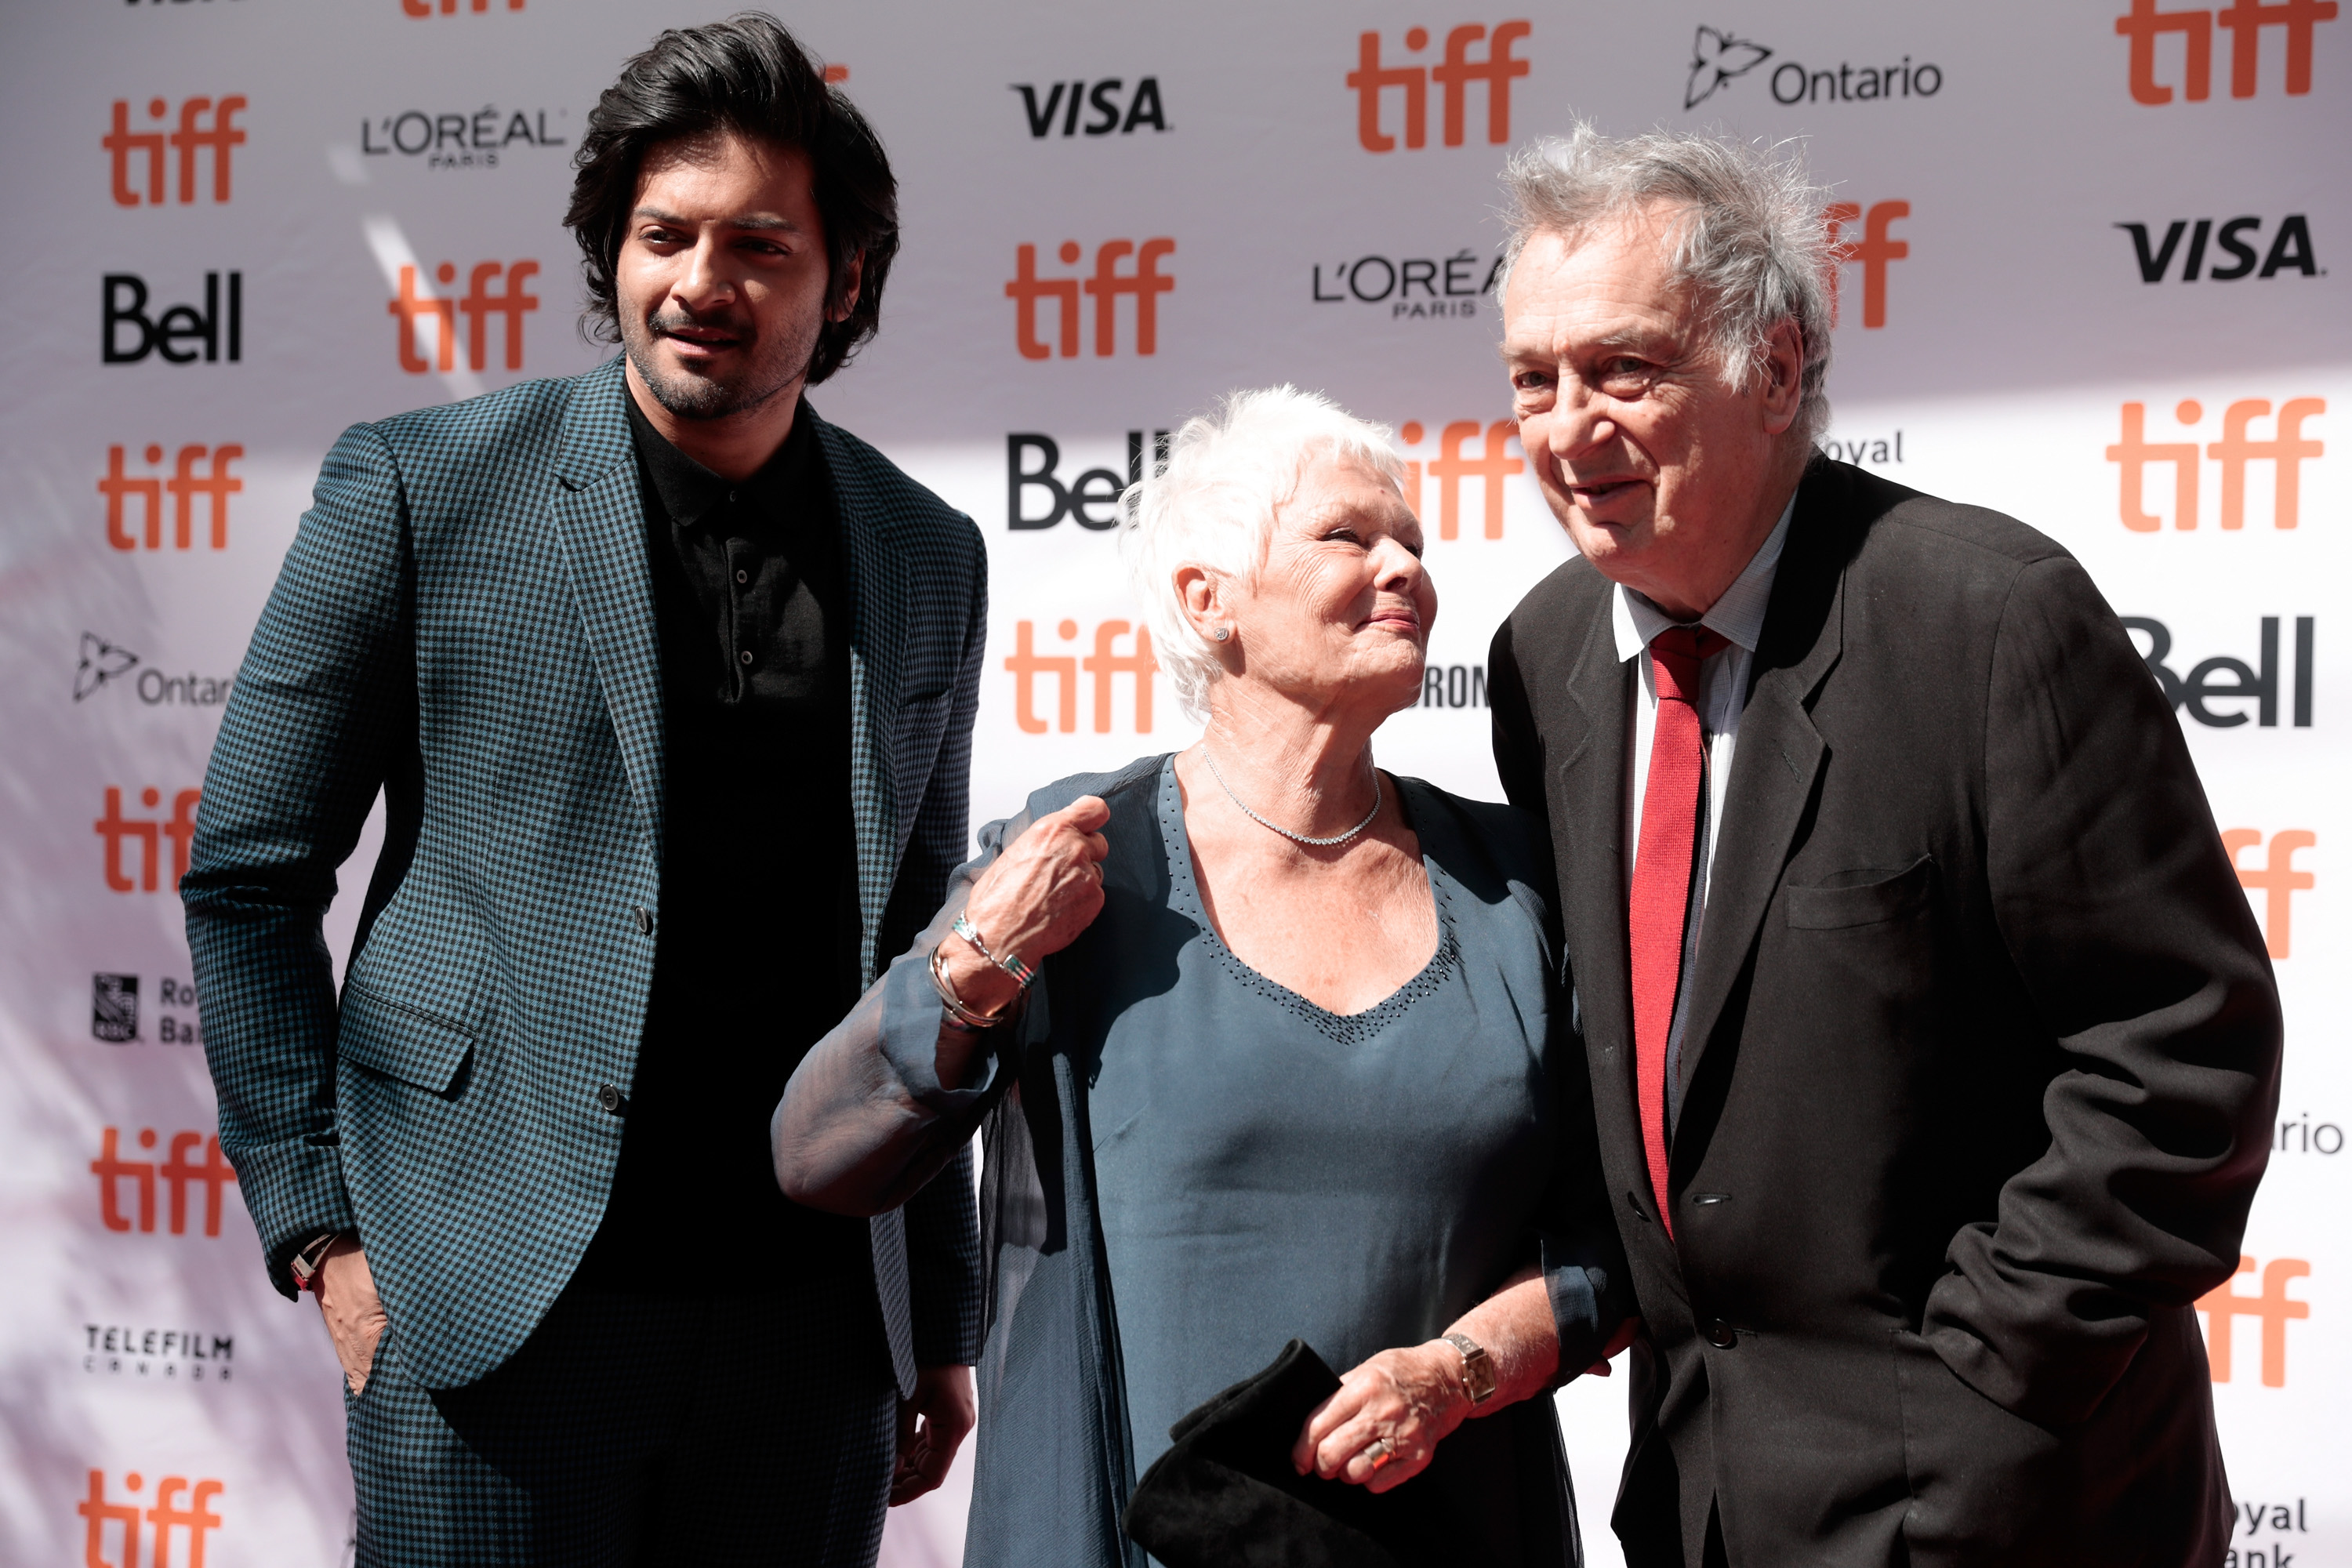 Ali Fazal, Judi Dench et Stephen Frears à la première de "Confident Royal" lors du Festival international du film de Toronto 2017 à Toronto, Canada, le 10 septembre 2017 | Source : Getty Images